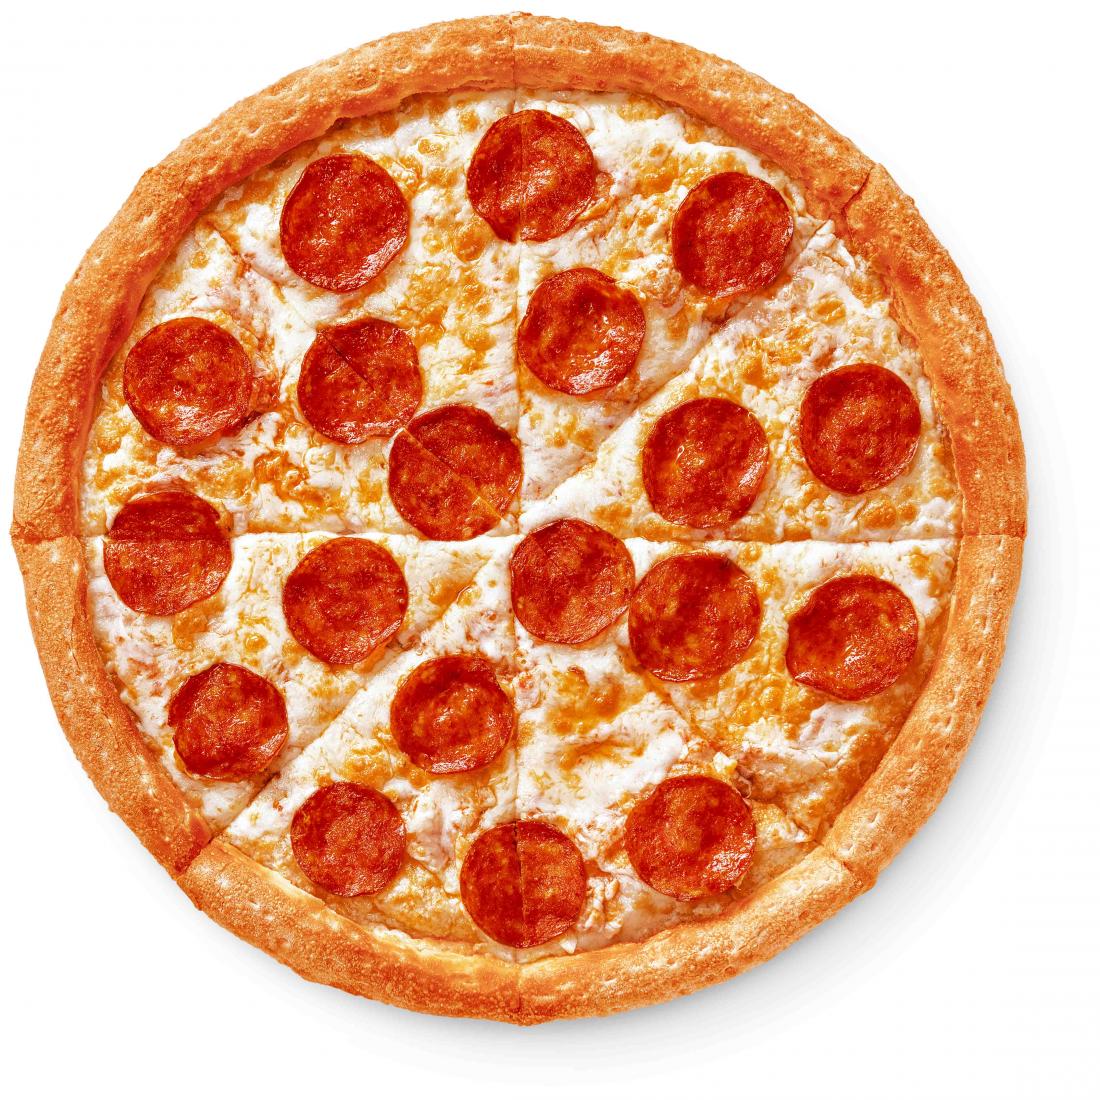 я хочу половину от четырех пицц пепперони как фото 86